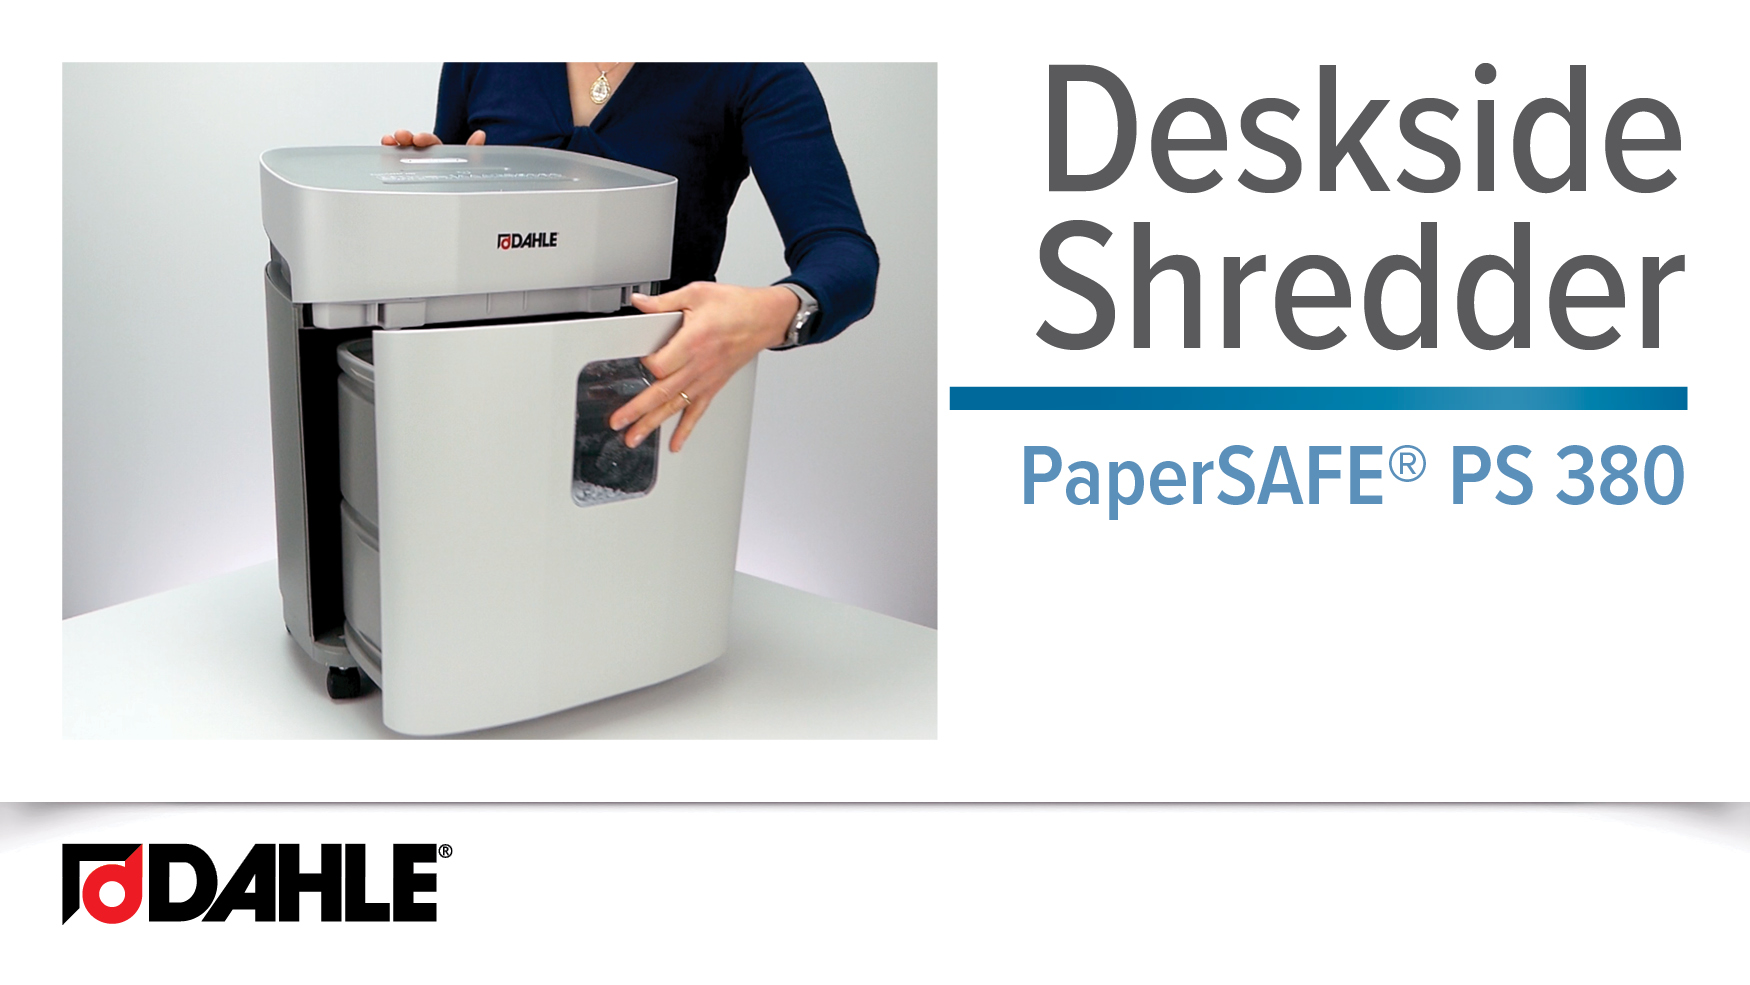 PaperSAFE® PS 380 Deskside Shredder Video